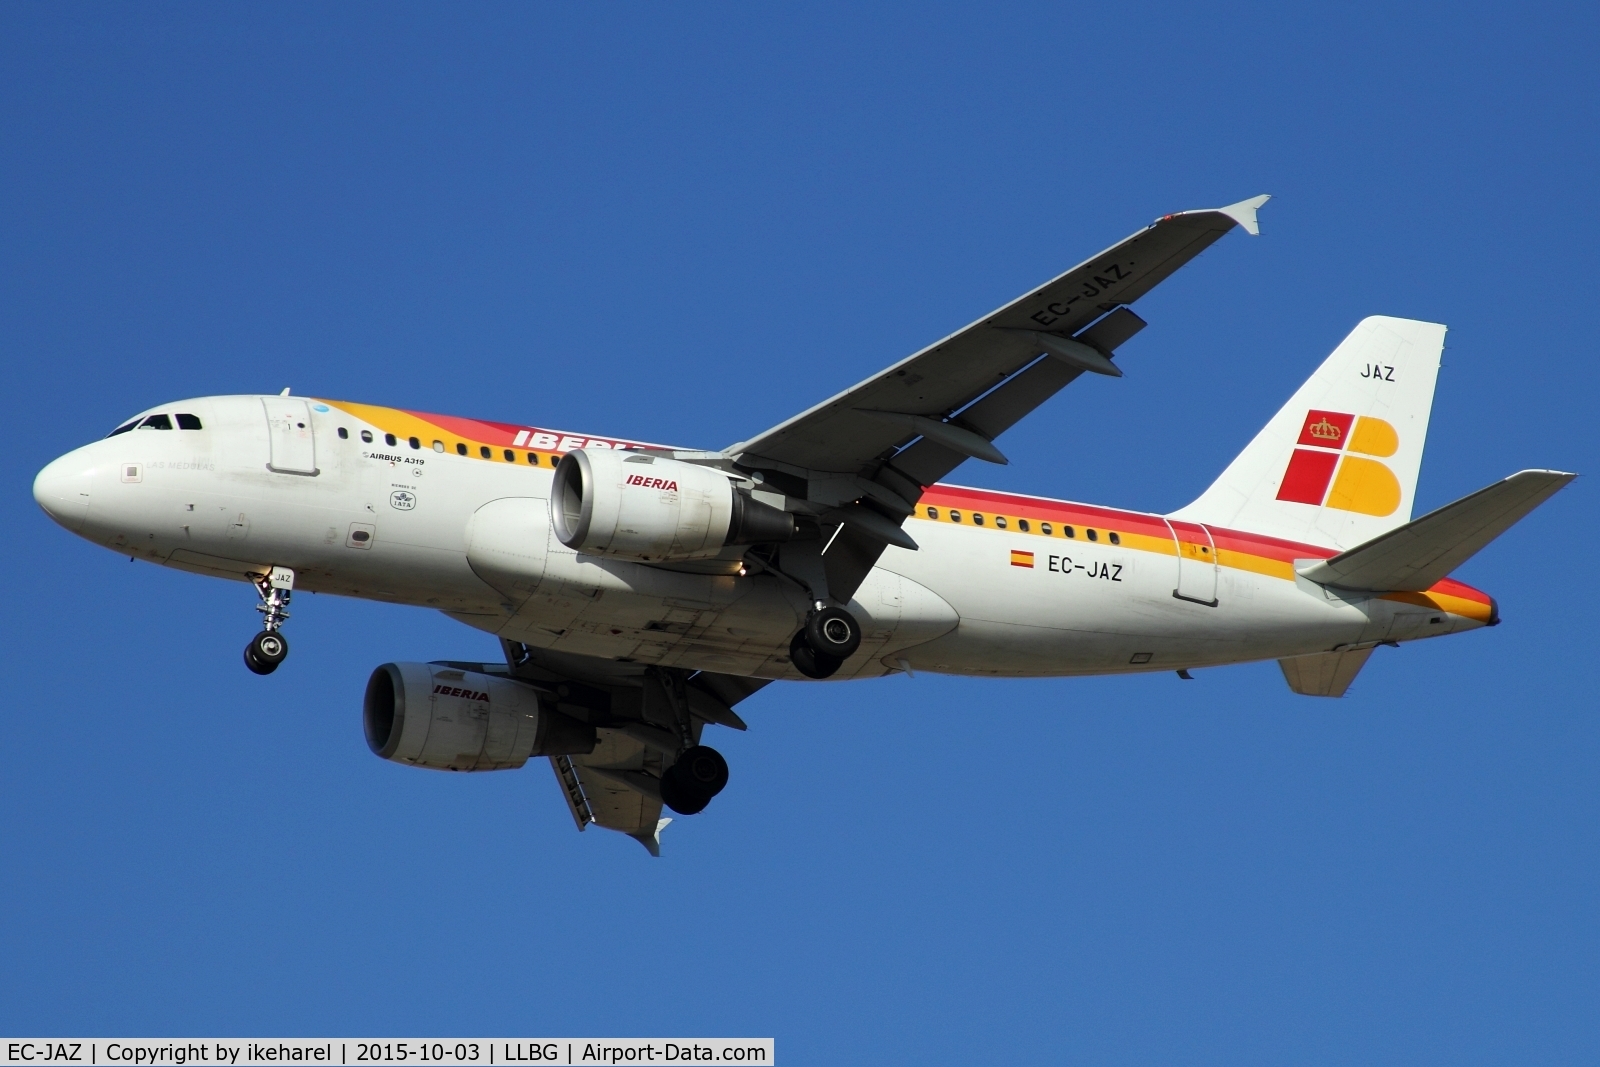 EC-JAZ, 2004 Airbus A319-111 C/N 2264, Flight from Madrid landing on runway 30.